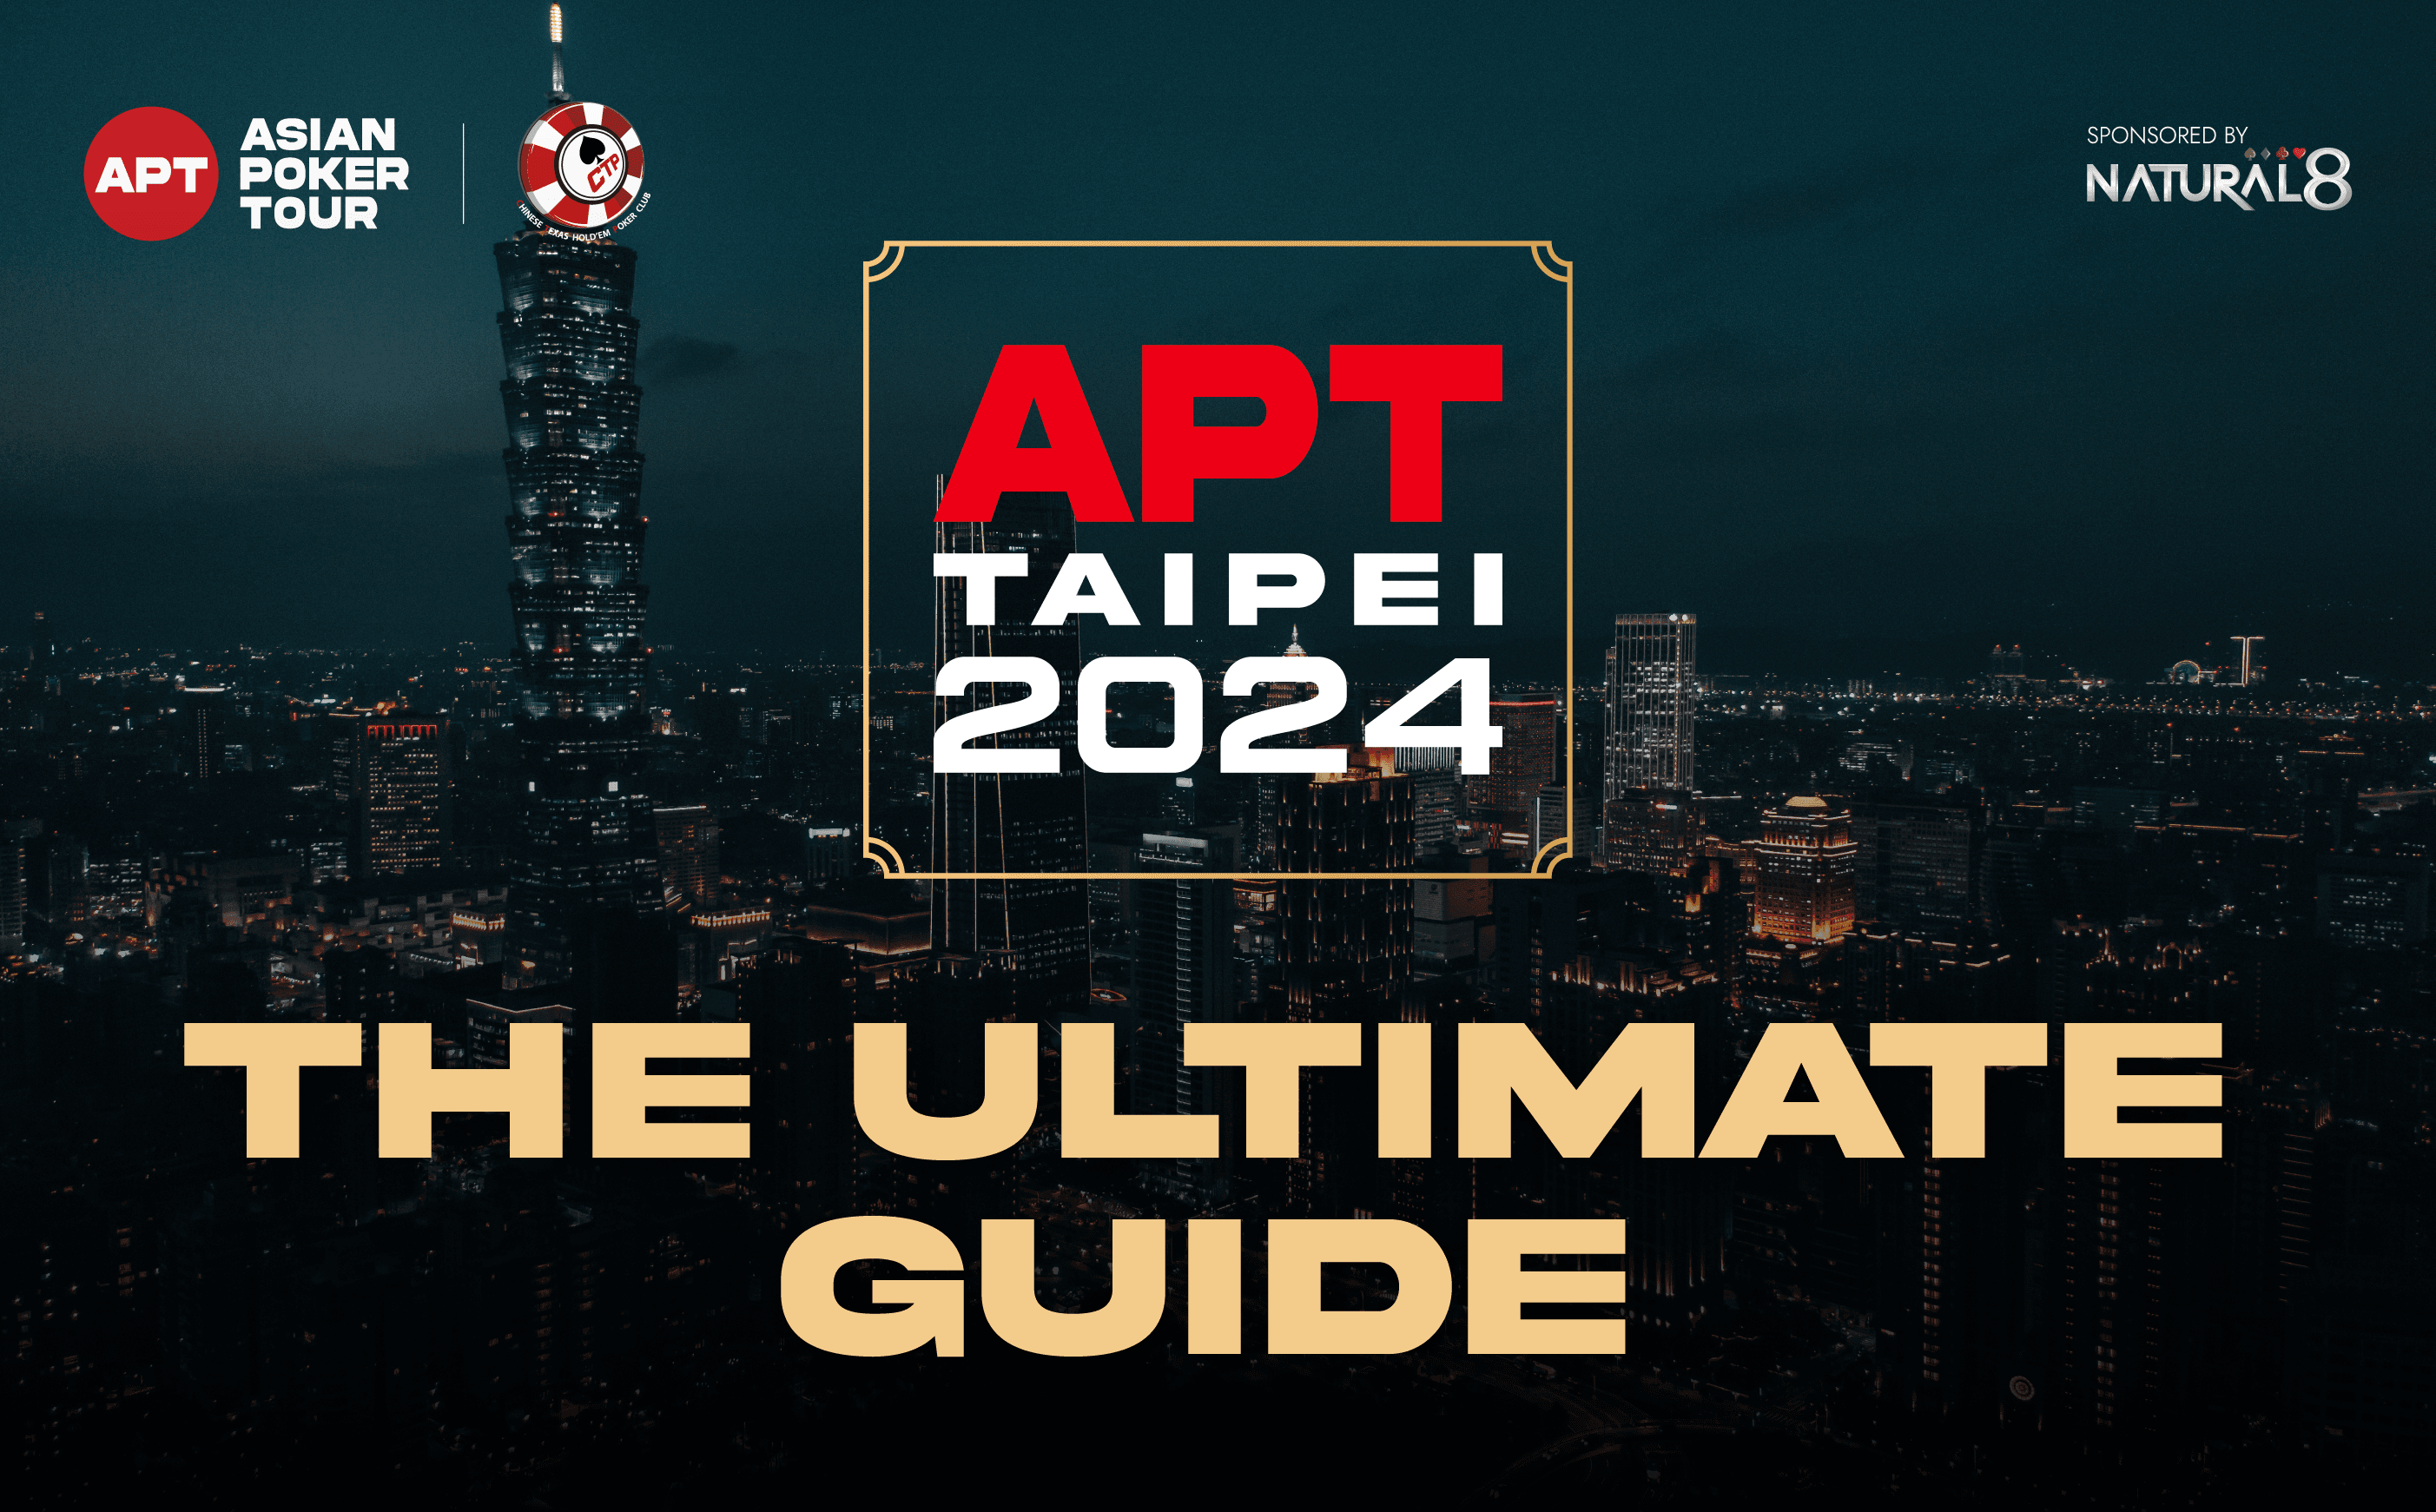 Ultimate Guide to APT Taipei 2024